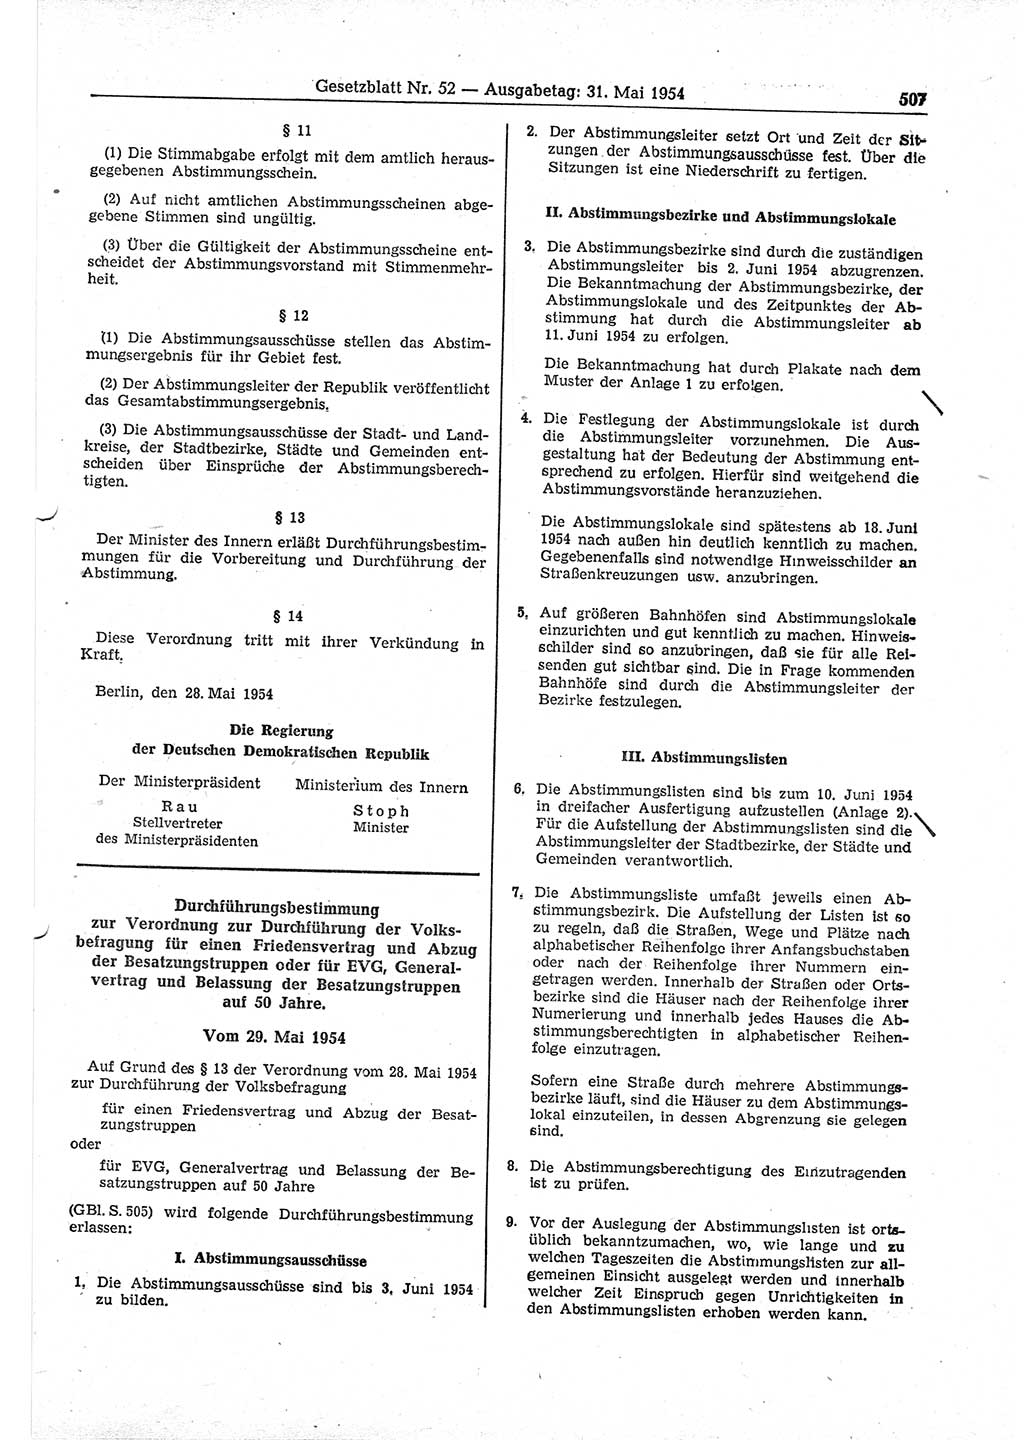 Gesetzblatt (GBl.) der Deutschen Demokratischen Republik (DDR) 1954, Seite 507 (GBl. DDR 1954, S. 507)